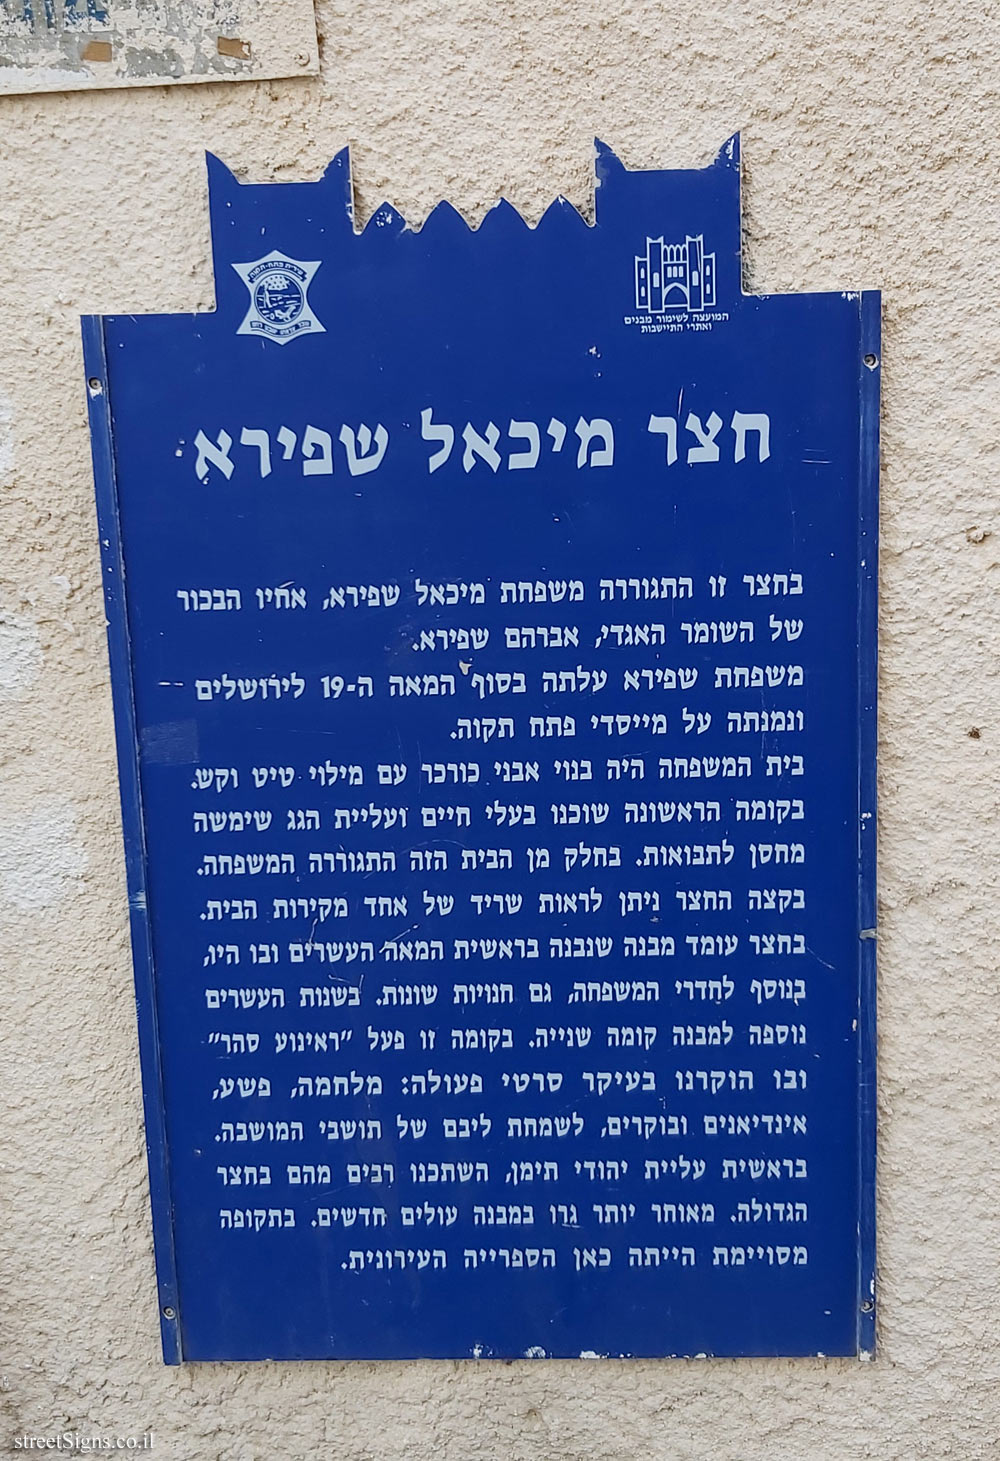 Petah Tikva - Heritage Sites in Israel - Michael Shapiro’s Yard